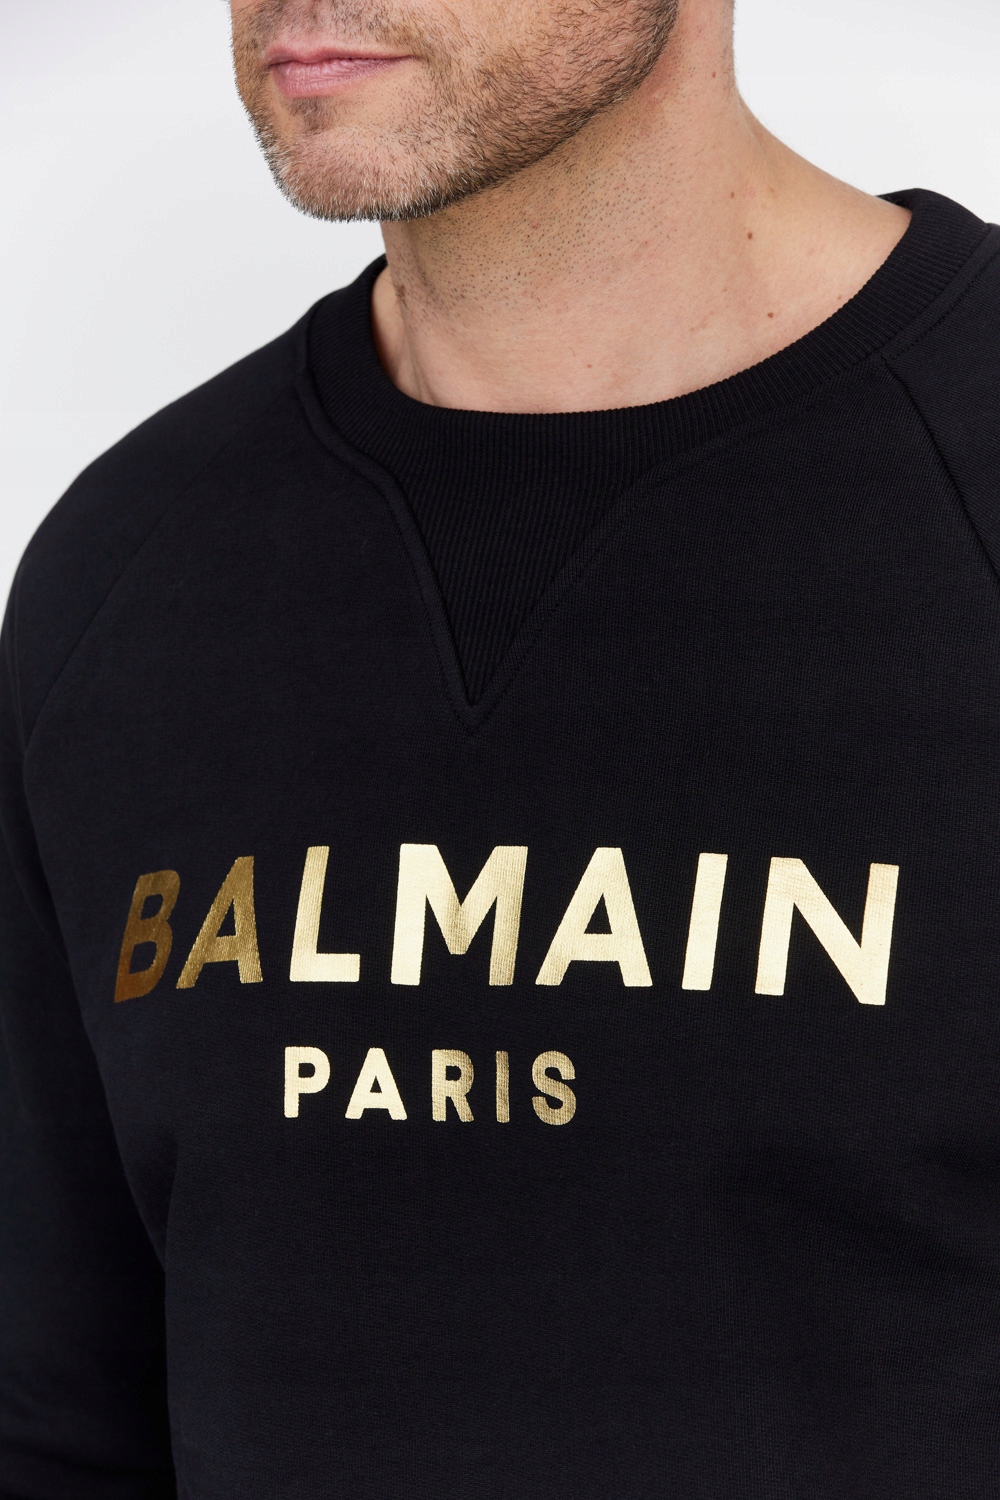 BALMAIN - Czarna bluza męska ze złotym logo 2XL 14420205117 - Allegro.pl